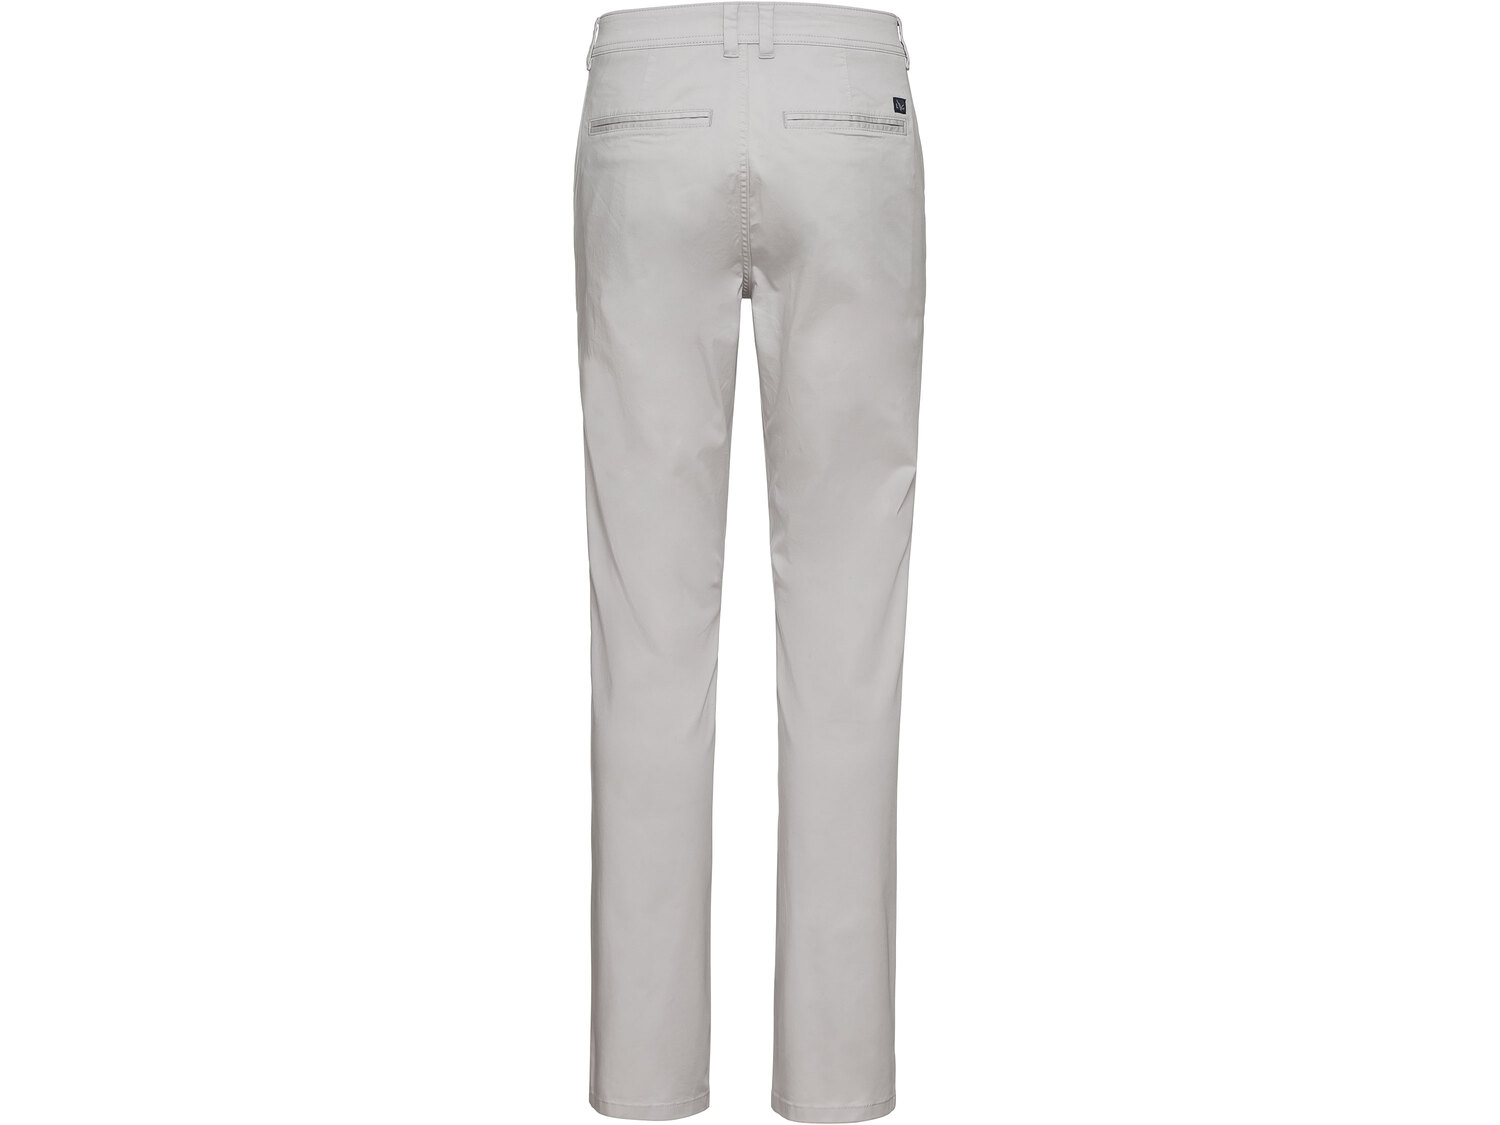 Spodnie męskie typu chino , cena 44,99 PLN 
- 98% bawełny, 2% elastanu (LYCRA®)
- ...